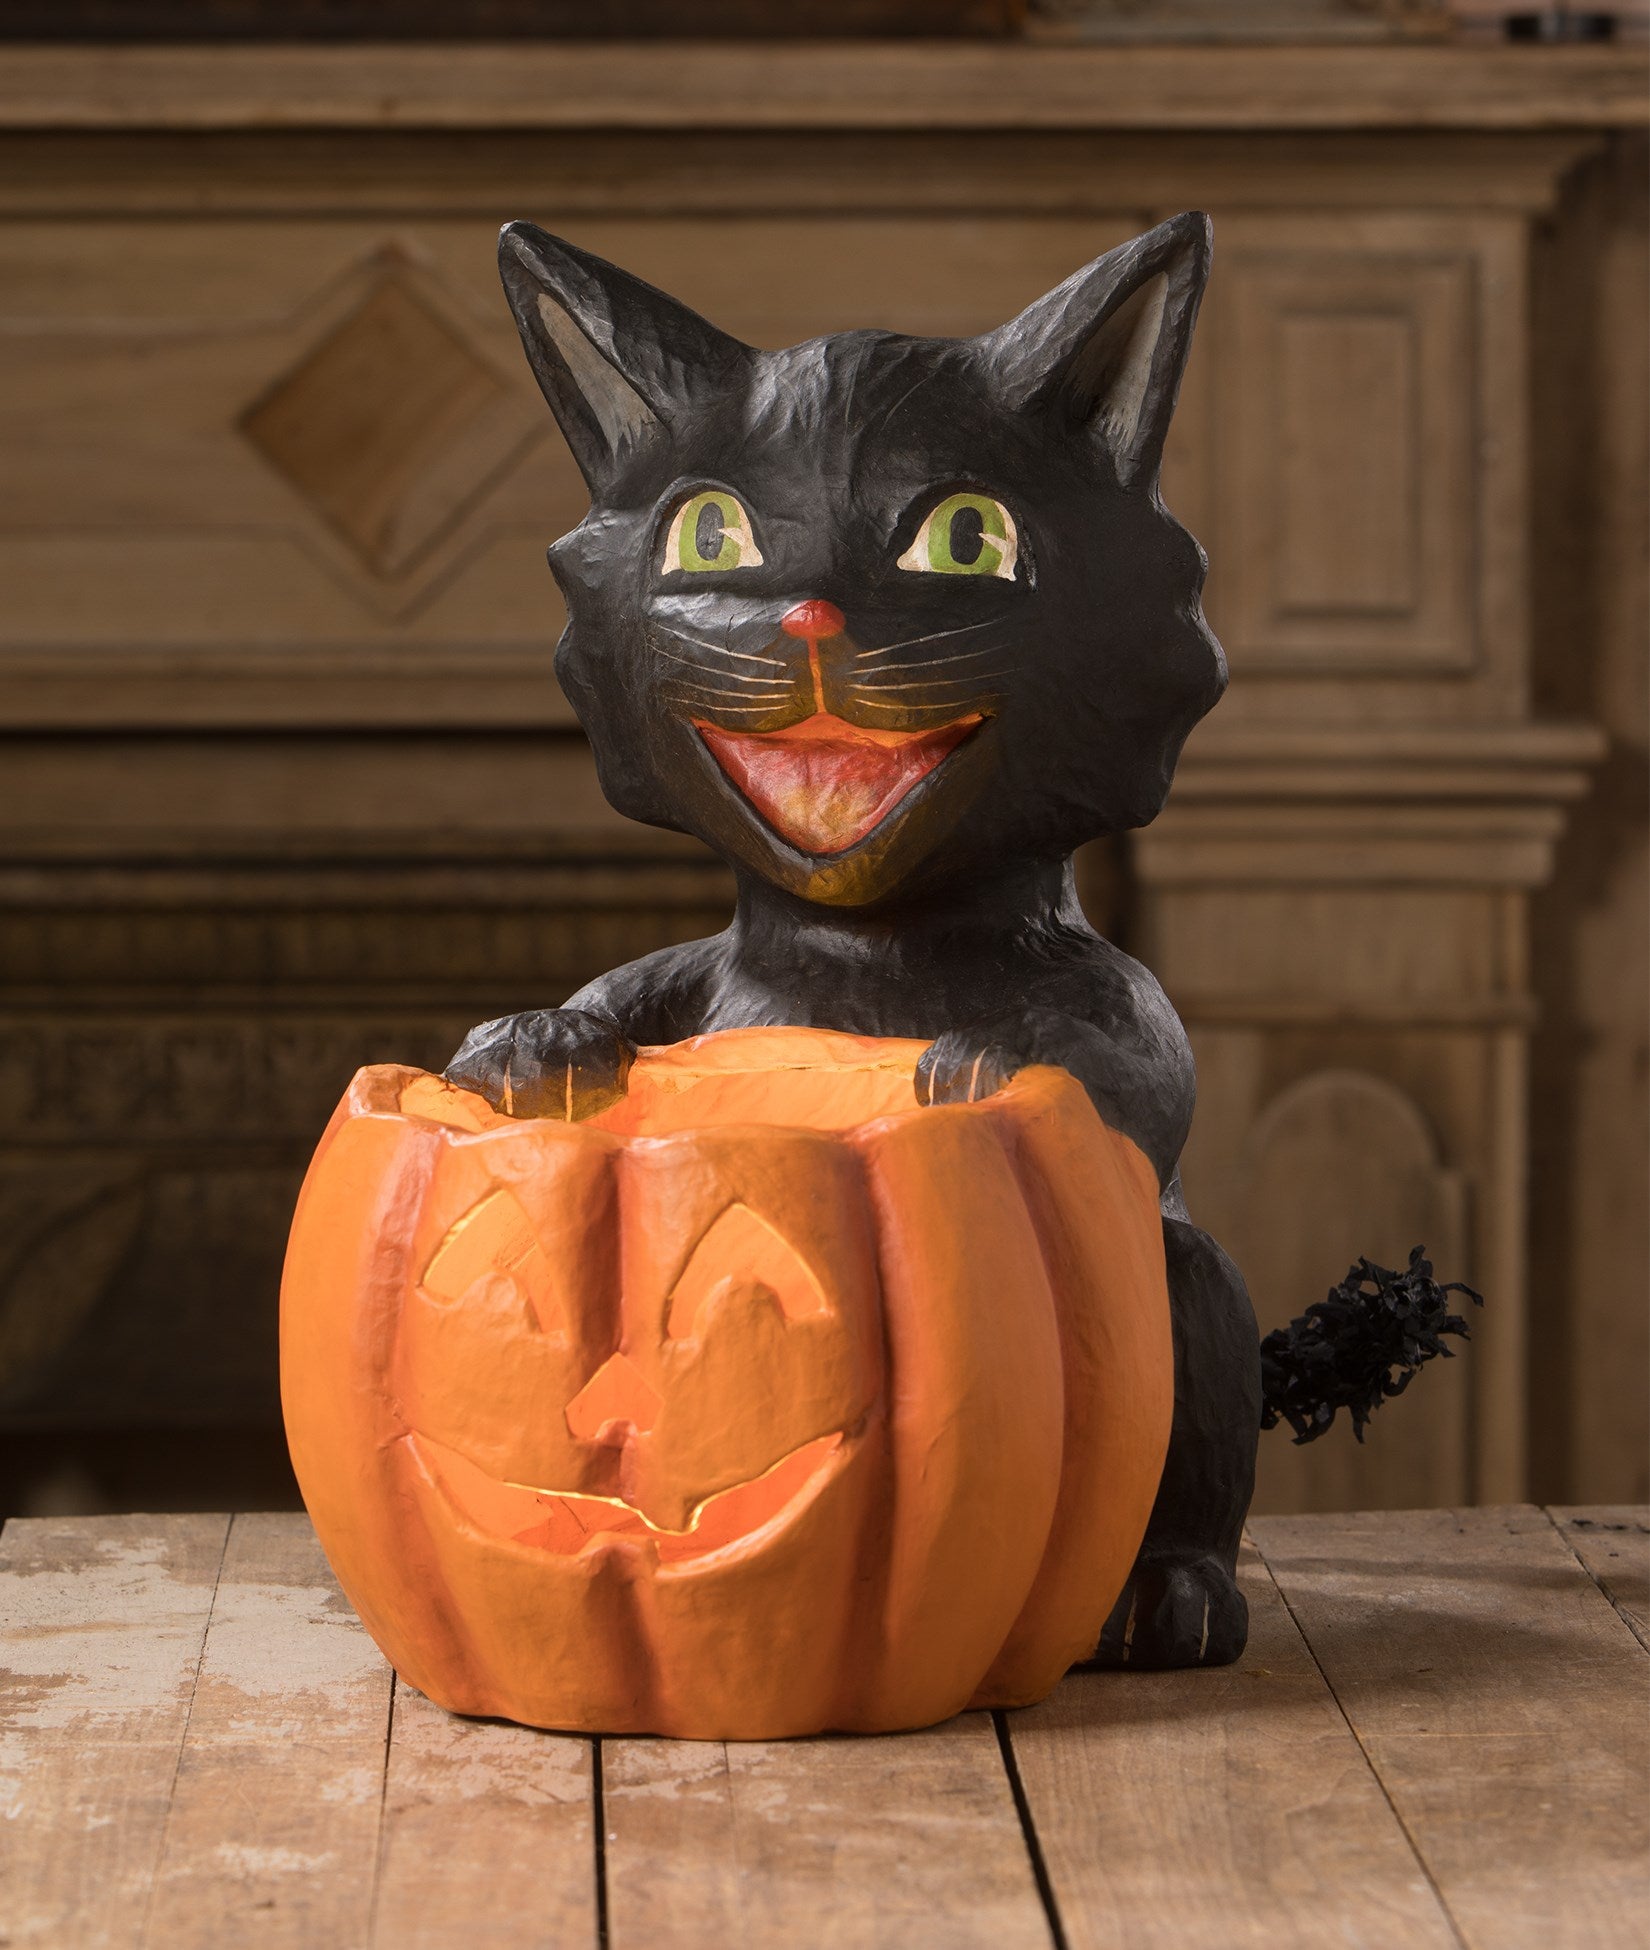 Cat's Got Your Pumpkin made from paper mache